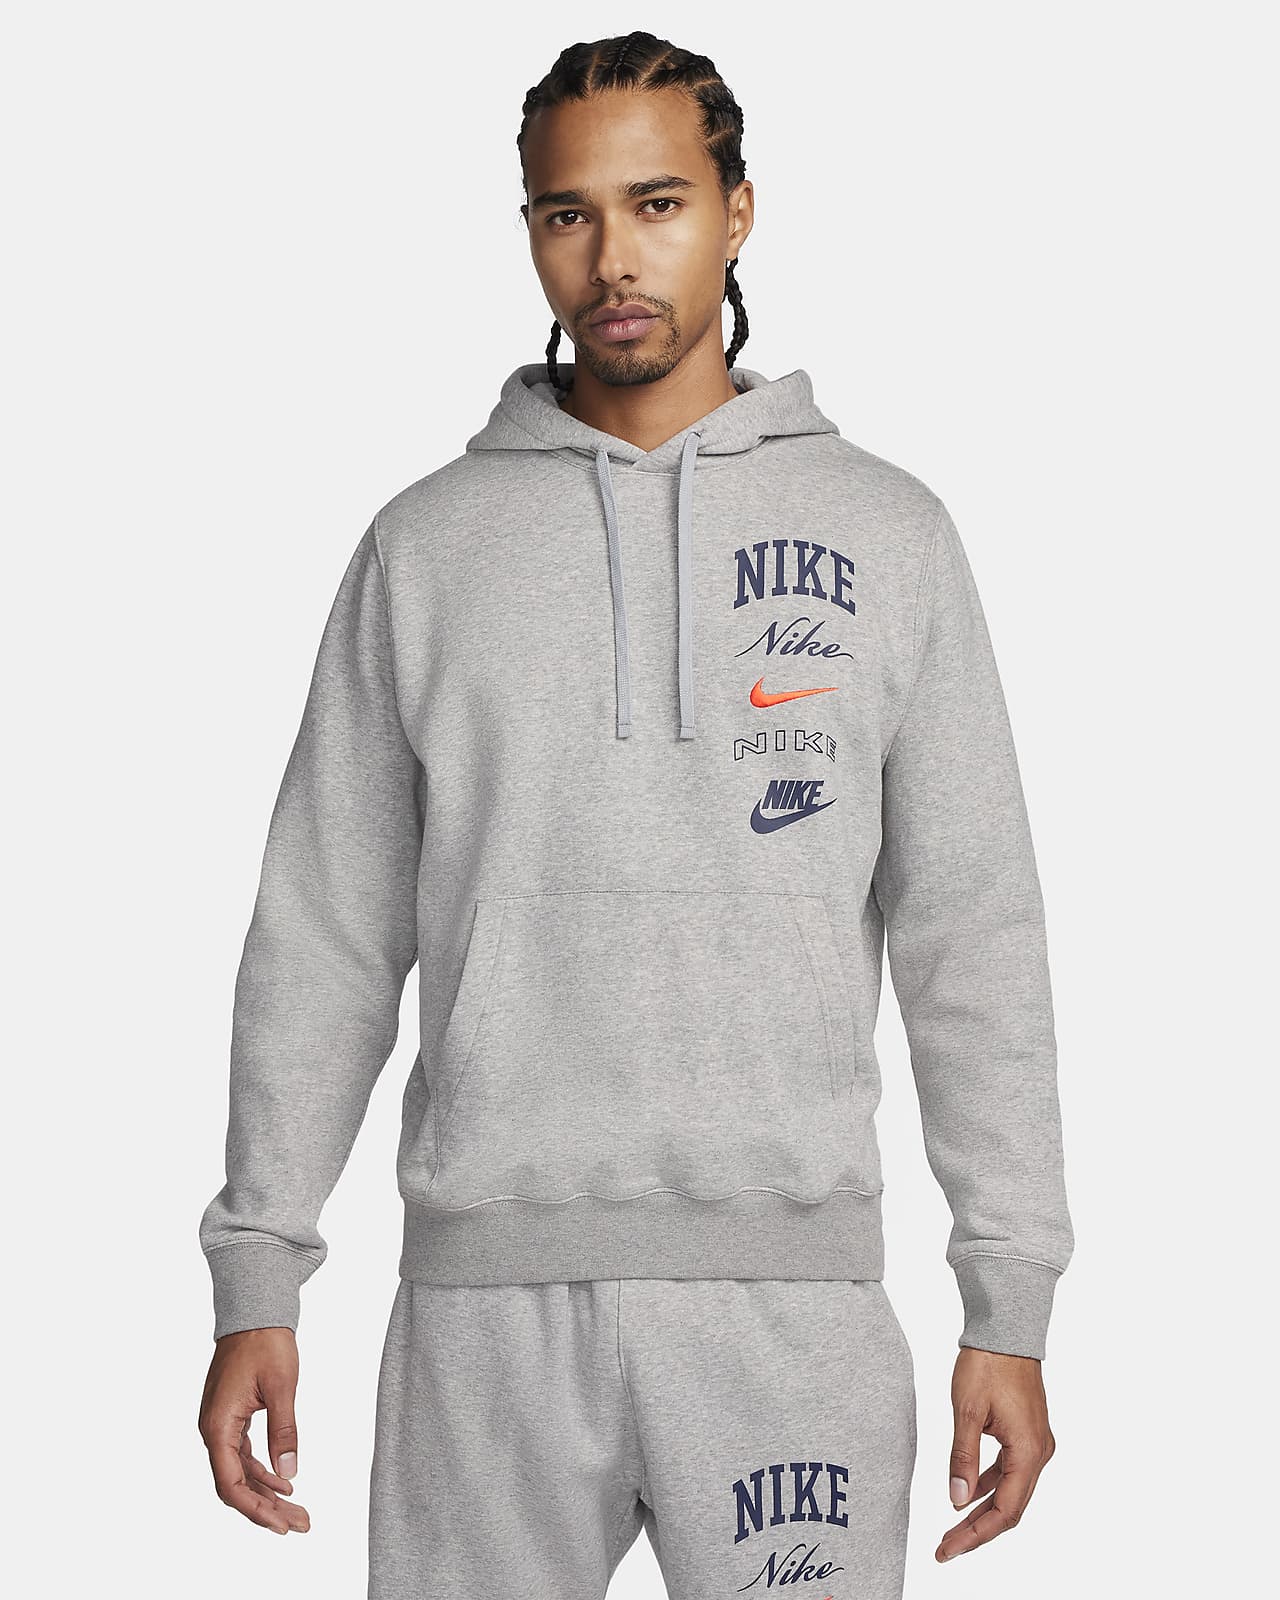 Nike Sportswear Men's Club Fleece Pullover Hoodie